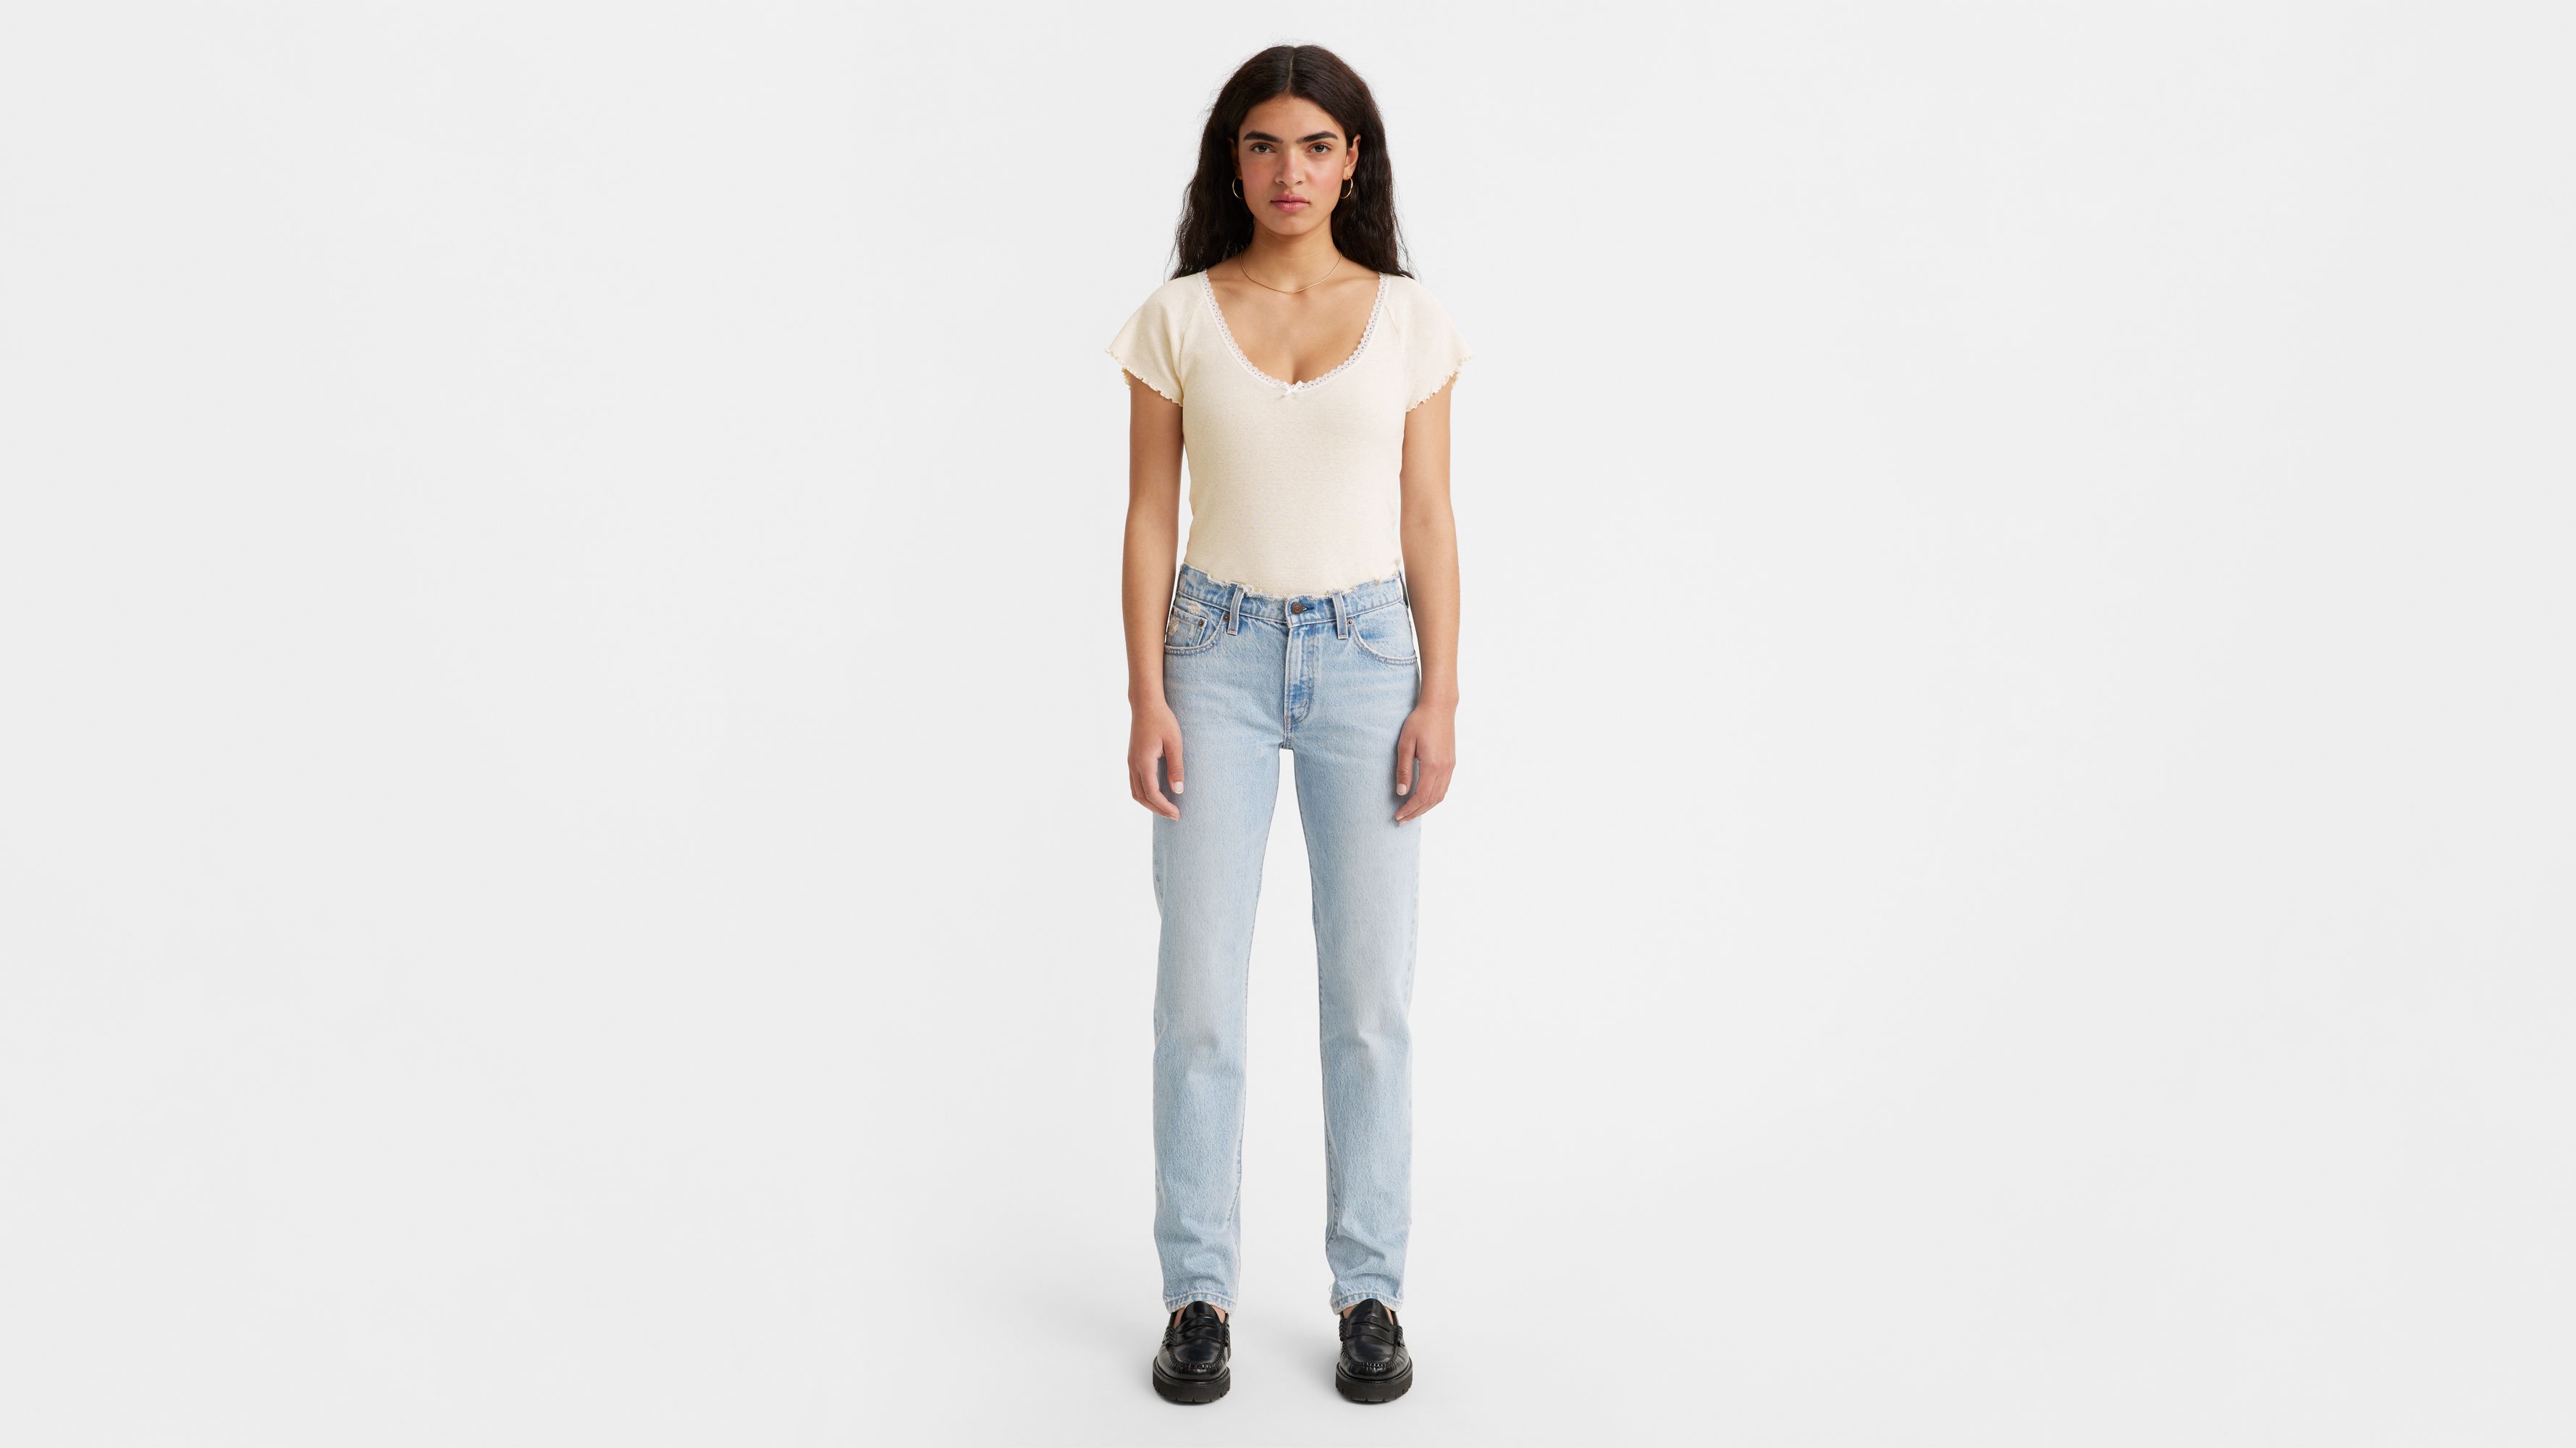 Levis 414 jeans women - Gem